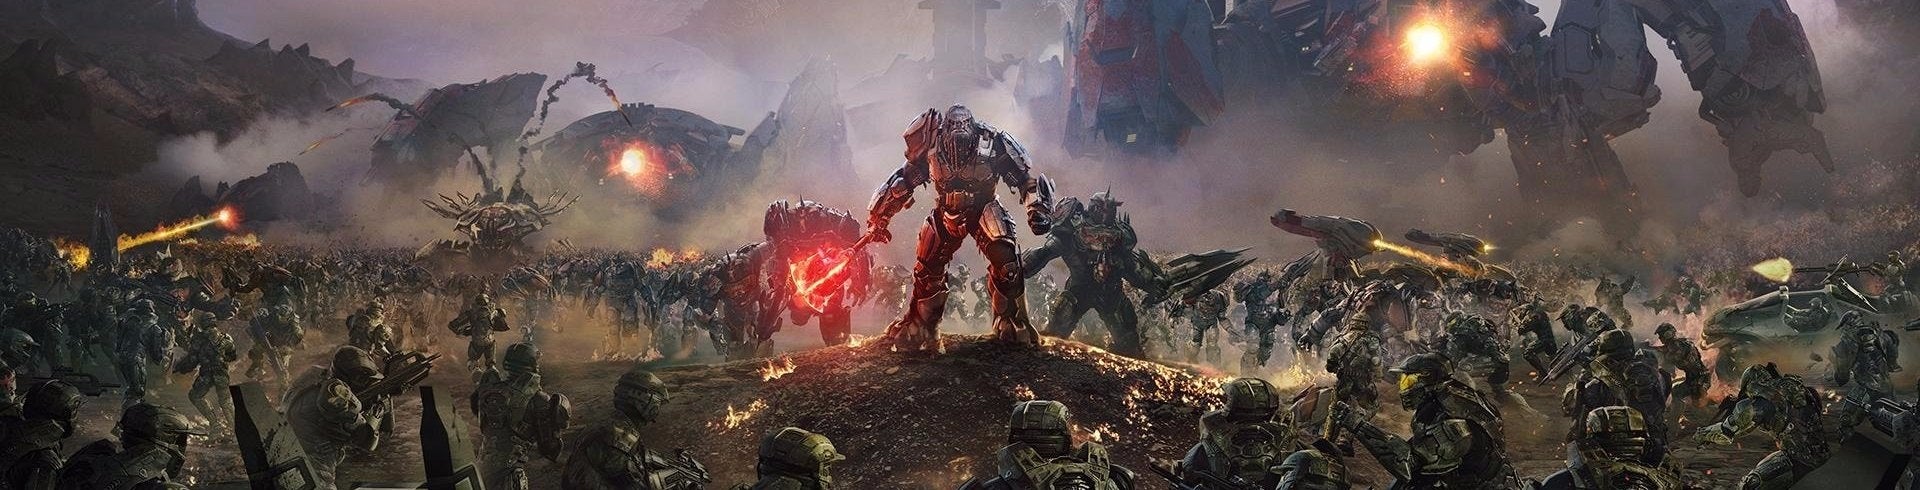 Image for E3 DOJMY z Halo Wars 2